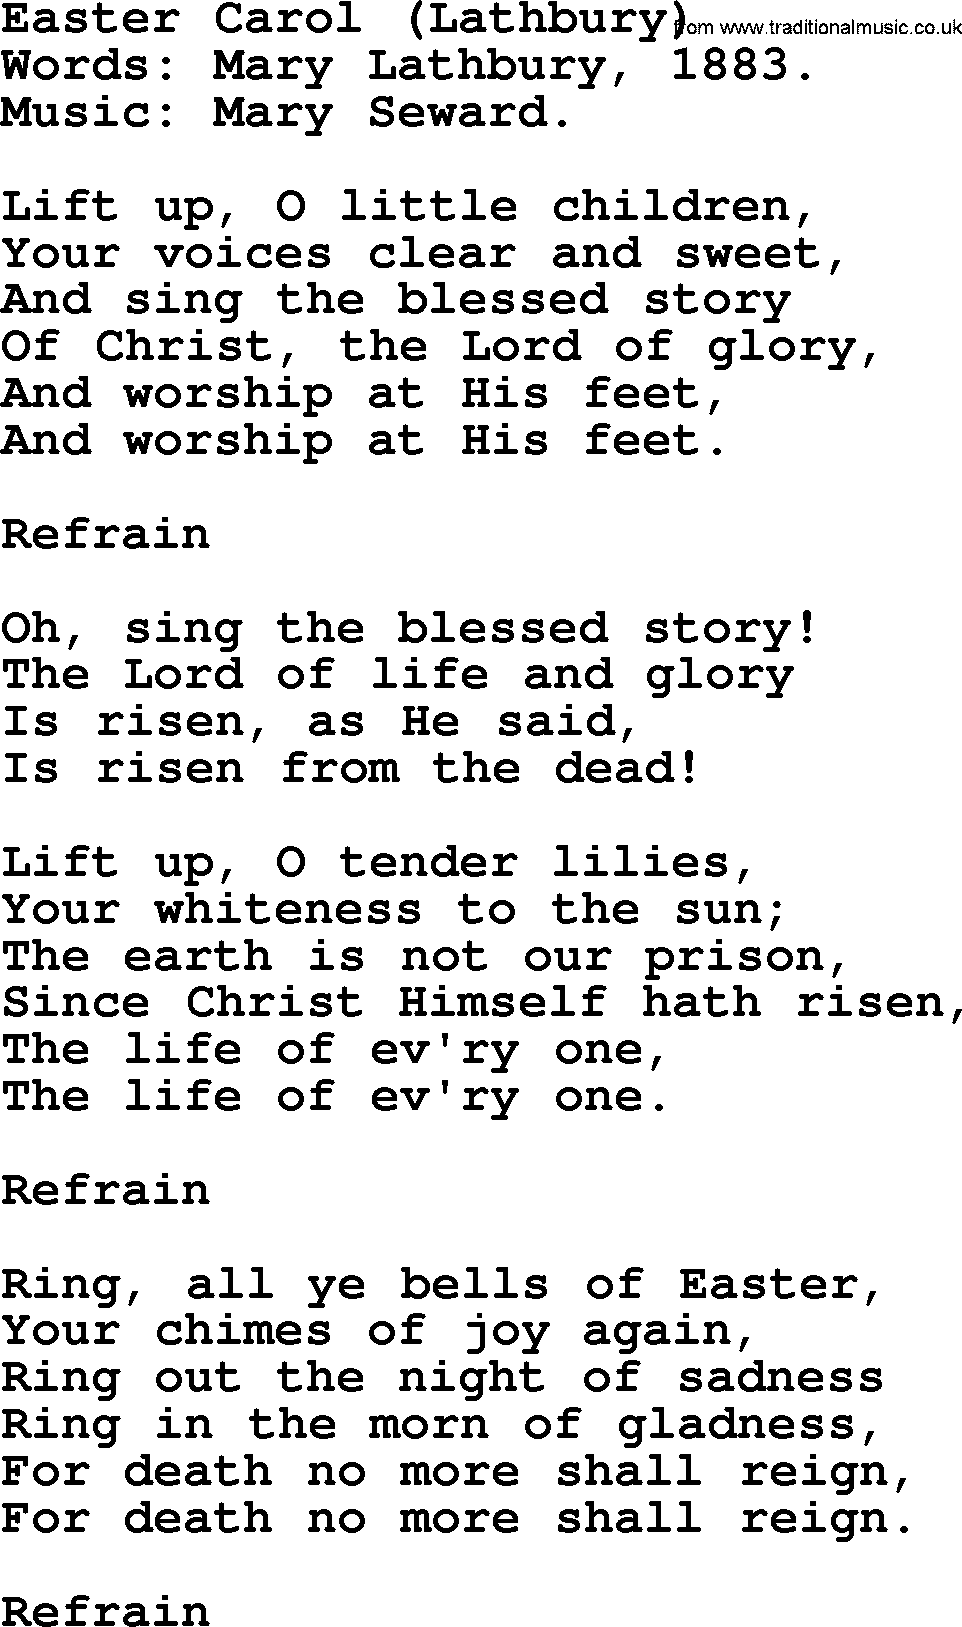 Easter Hymns, Hymn: Easter Carol (lathbury), lyrics with PDF